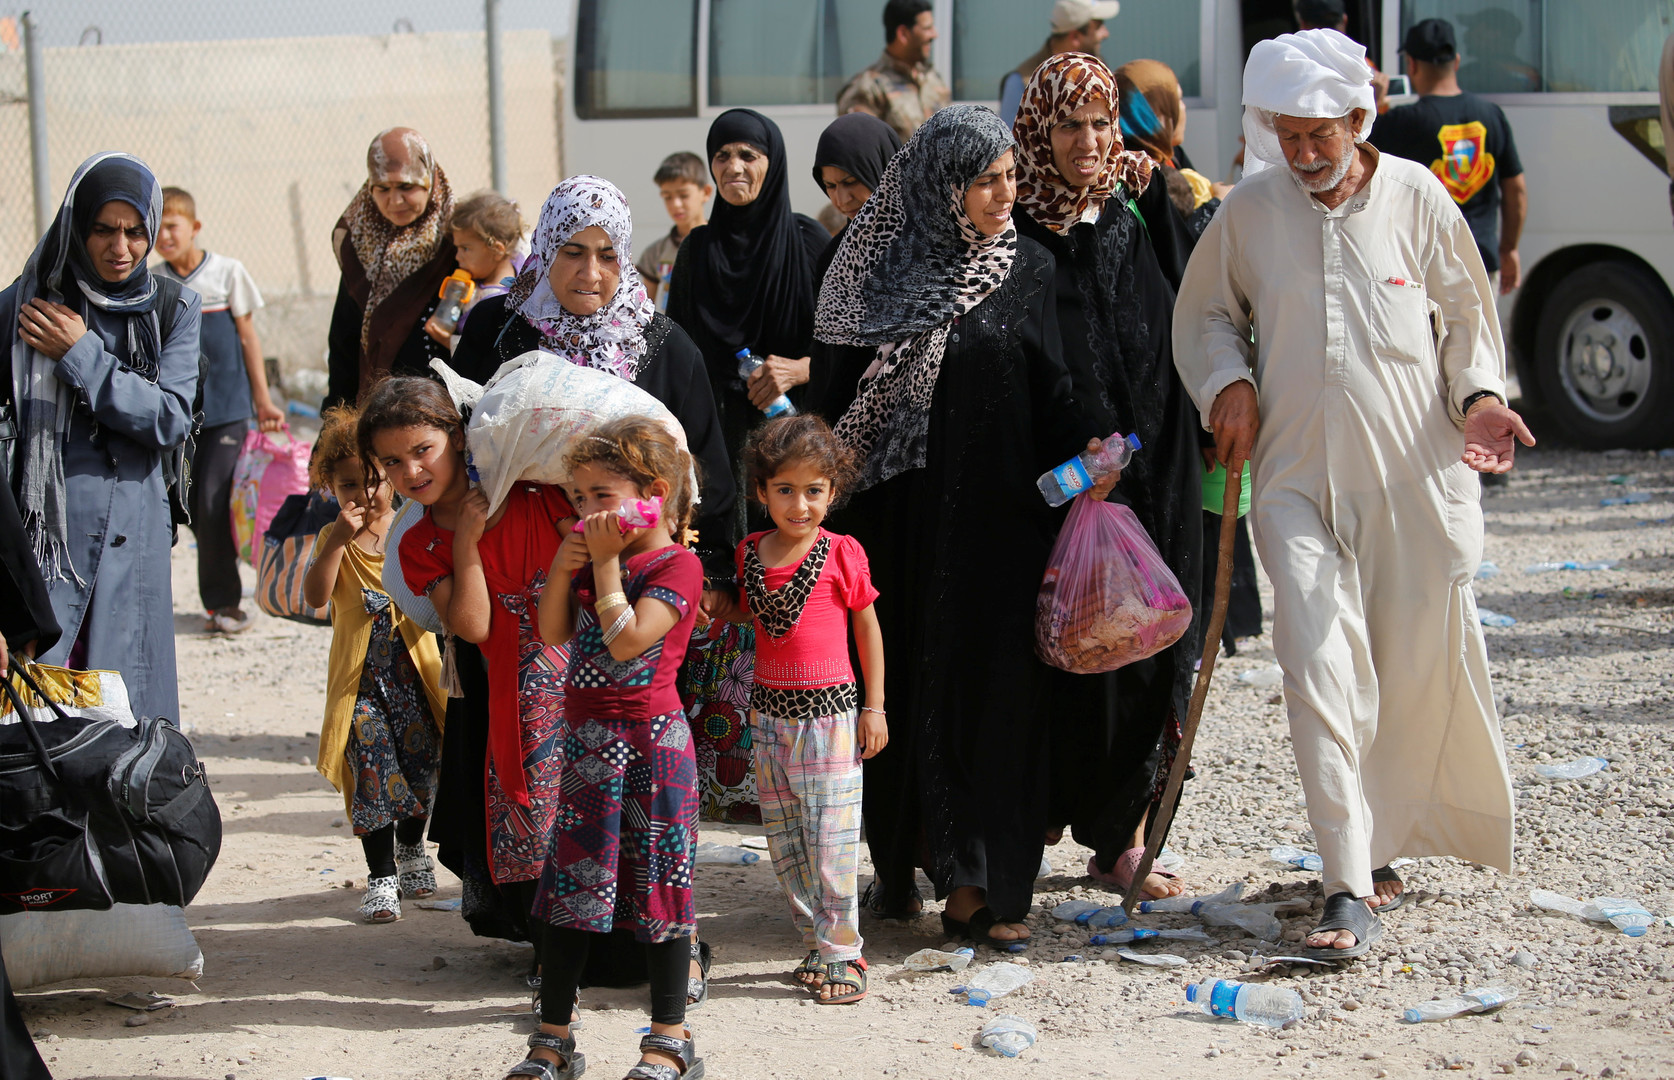 Irak : des civils qui fuient Falloujah visés par des tirs de l'Etat islamique, acculé (PHOTOS)